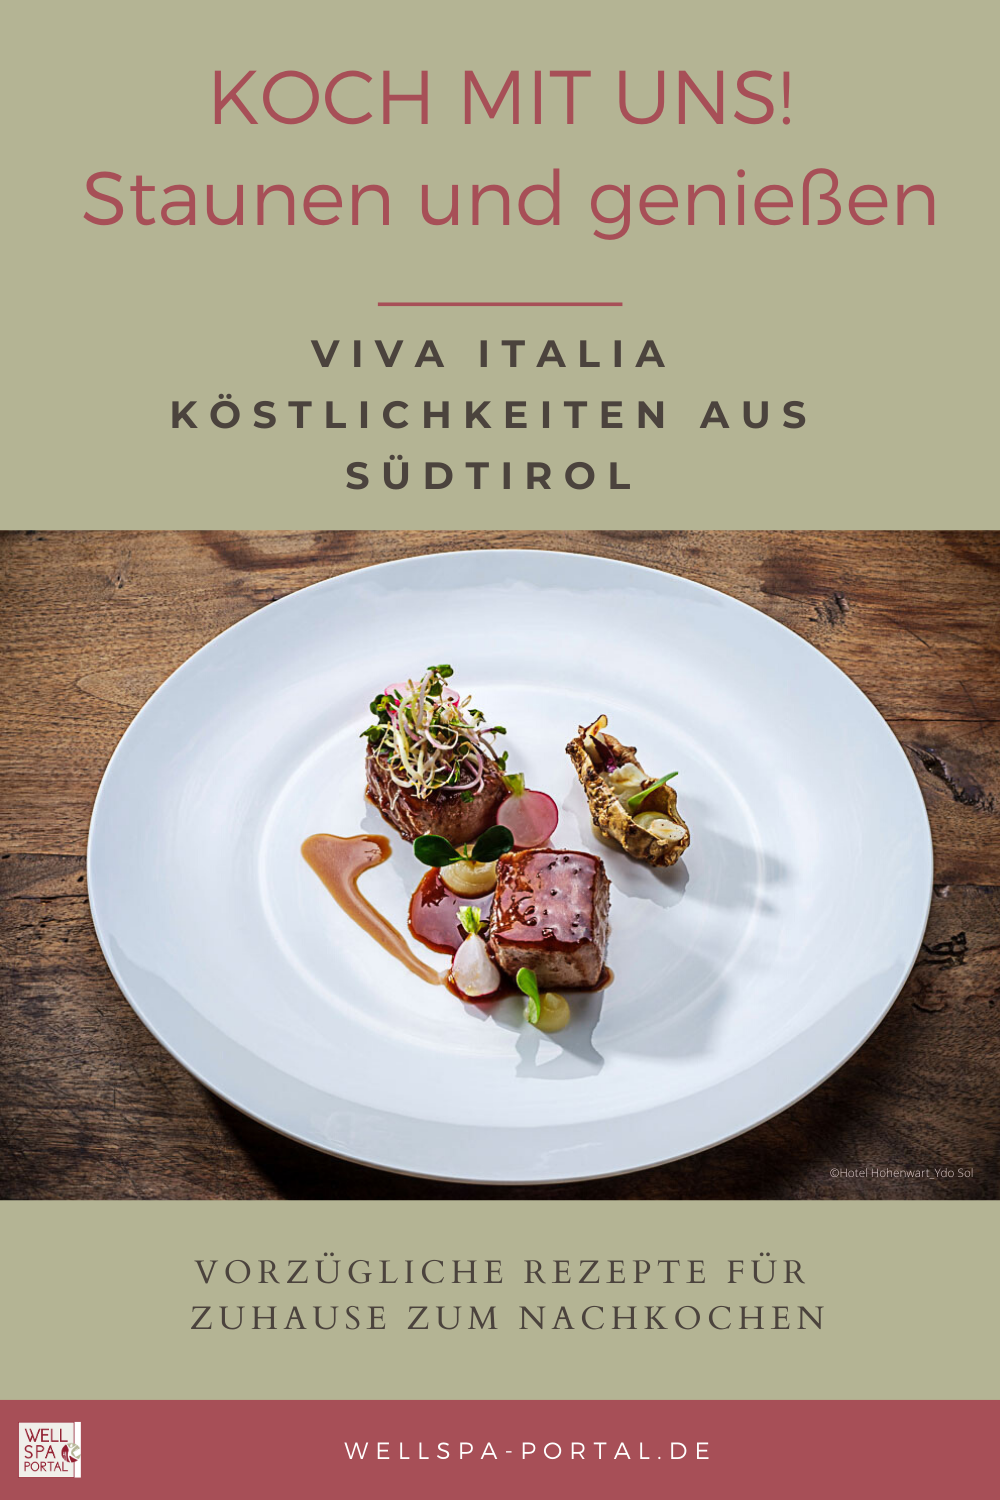 Nachhaltig, gesund und regional - Komm mit auf eine kulinarische Reise. REZEPTE aus aller Welt - Fernweh stillen und zuhause kochen. #zuhausekochen #Rezept #virtuelleReise #Südtirol